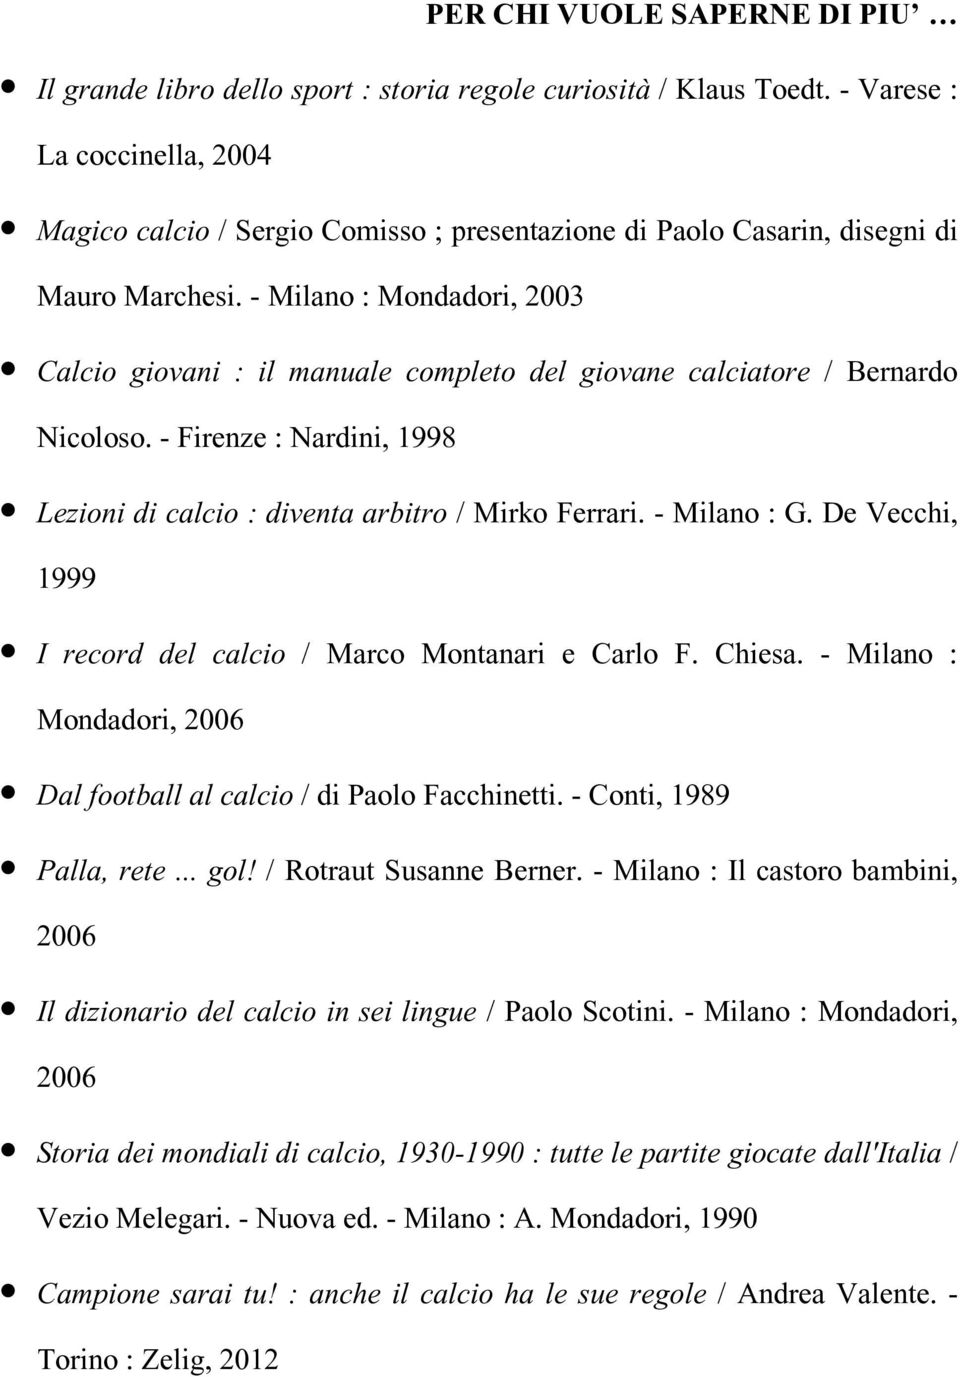 - Milano : Mondadori, 2003 Calcio giovani : il manuale completo del giovane calciatore / Bernardo Nicoloso. - Firenze : Nardini, 1998 Lezioni di calcio : diventa arbitro / Mirko Ferrari. - Milano : G.